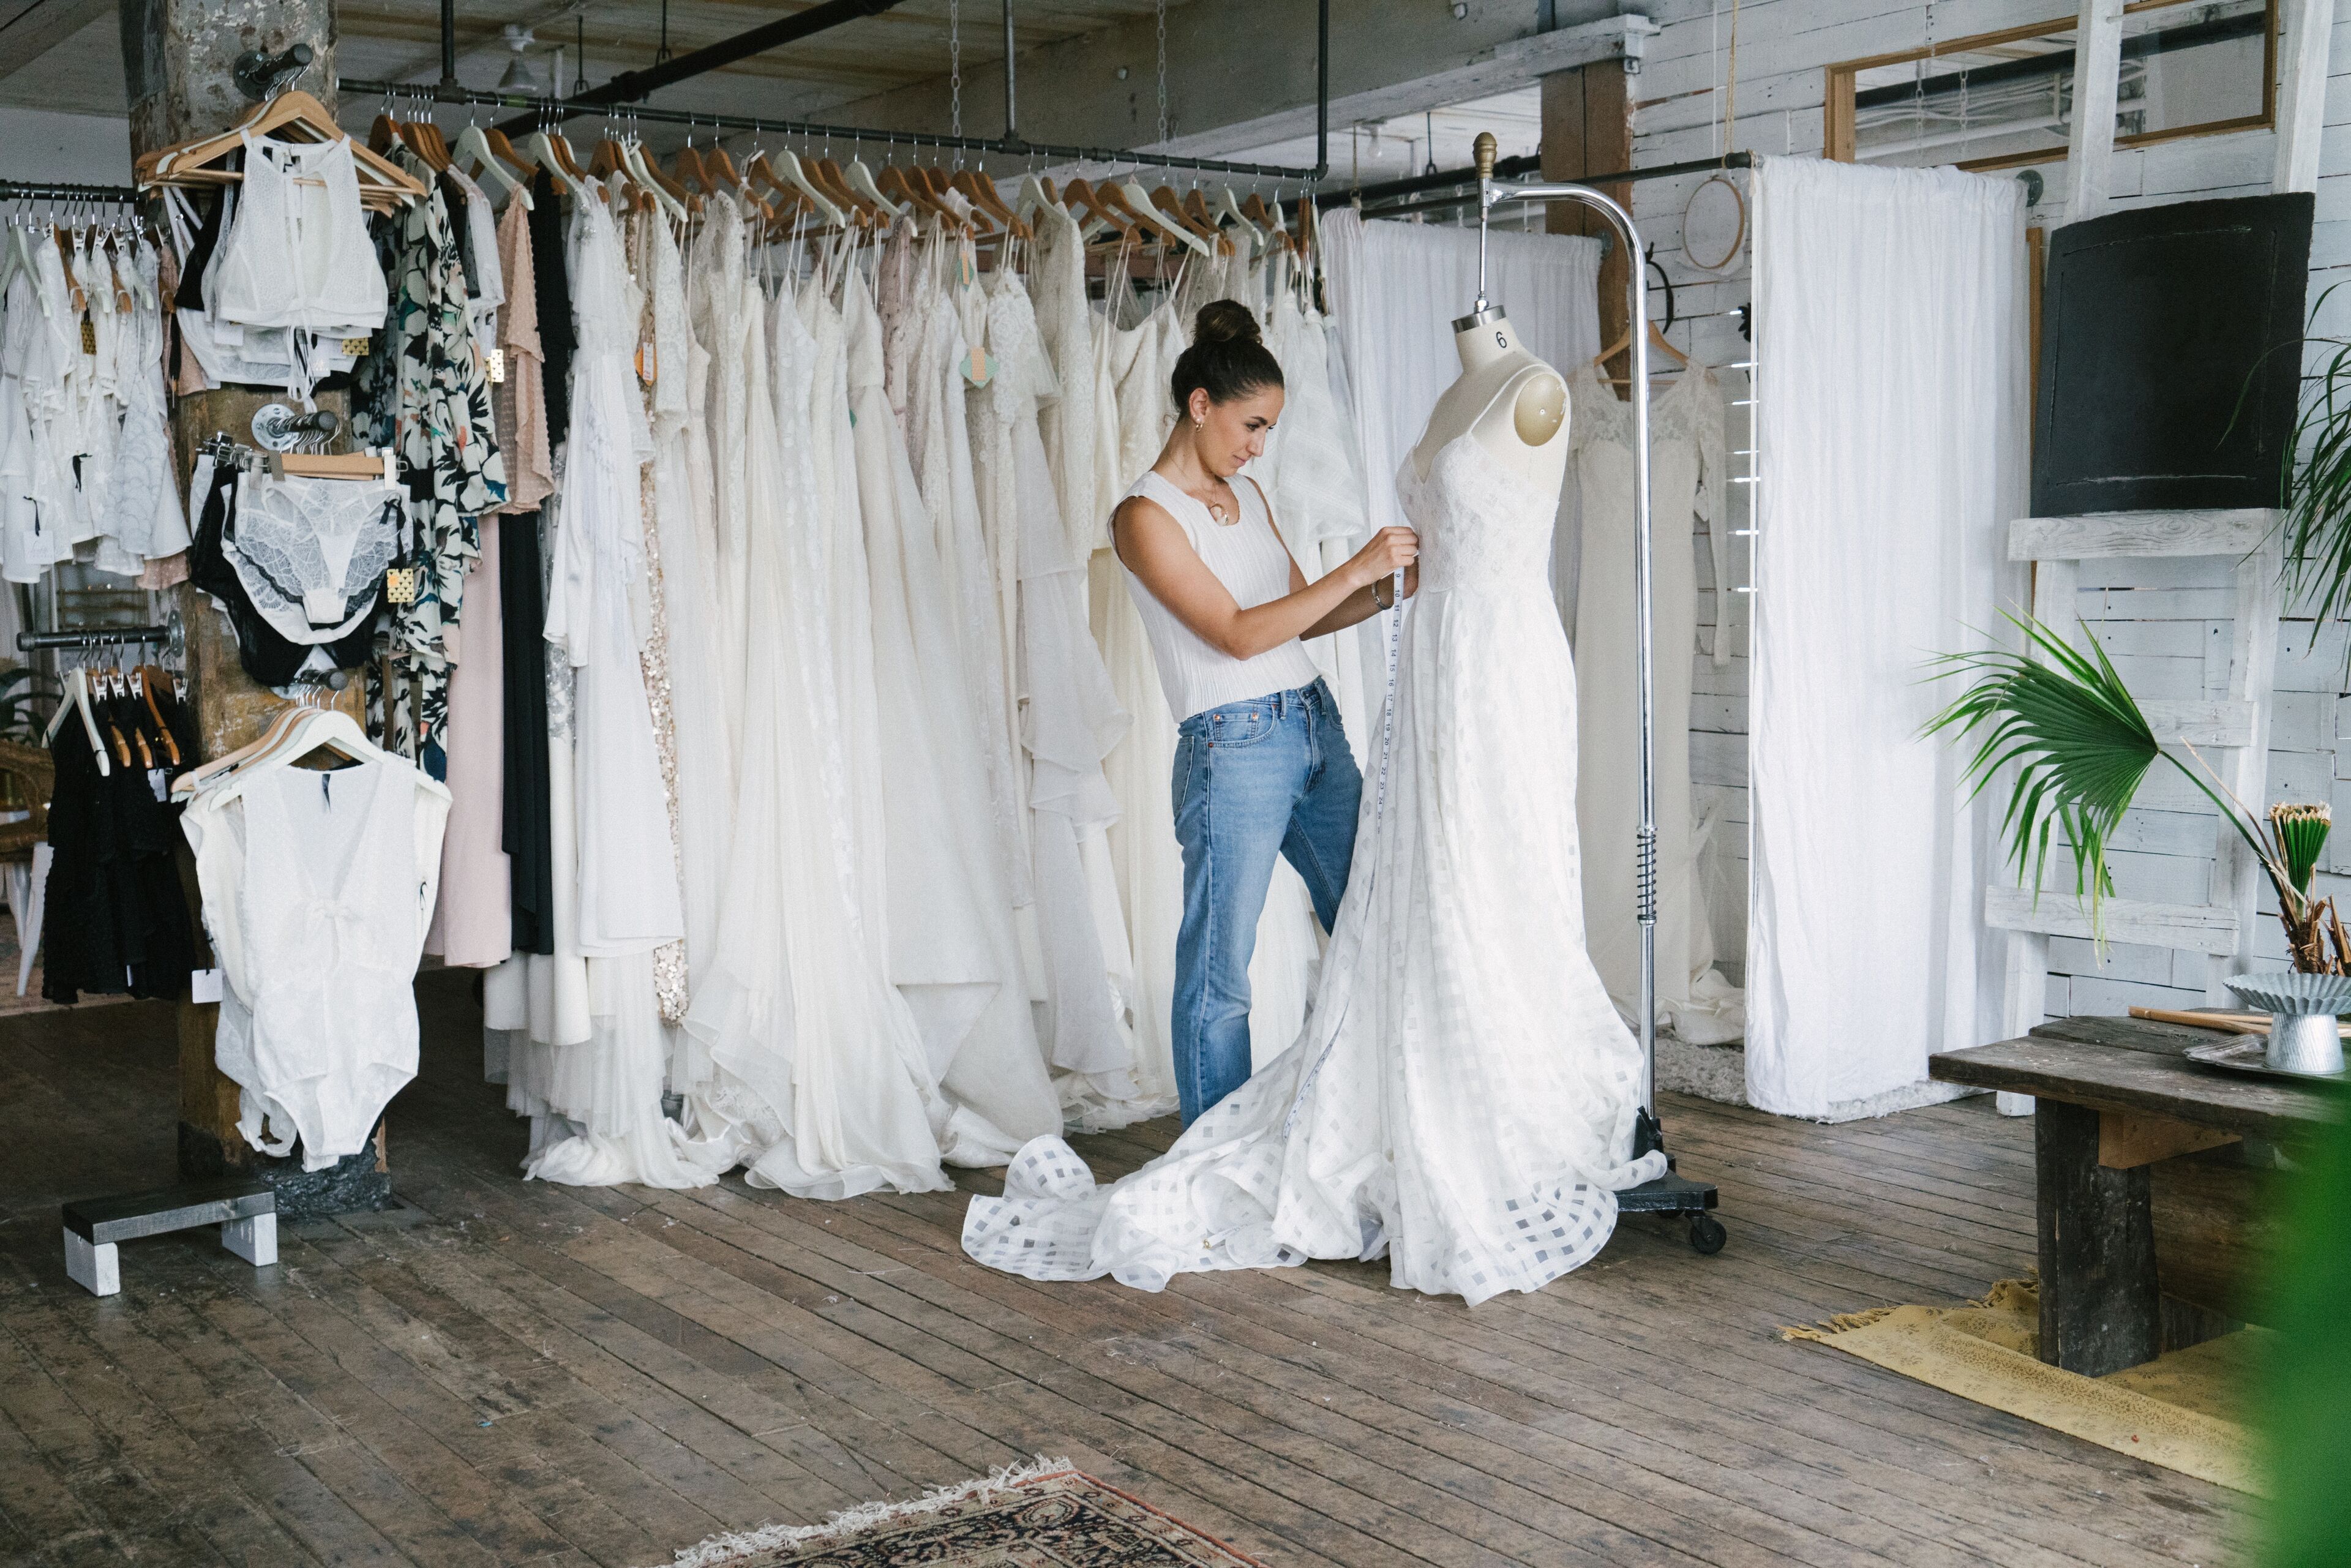 Una mujer está ajustando un vestido de novia en una boutique con varios vestidos al fondo.